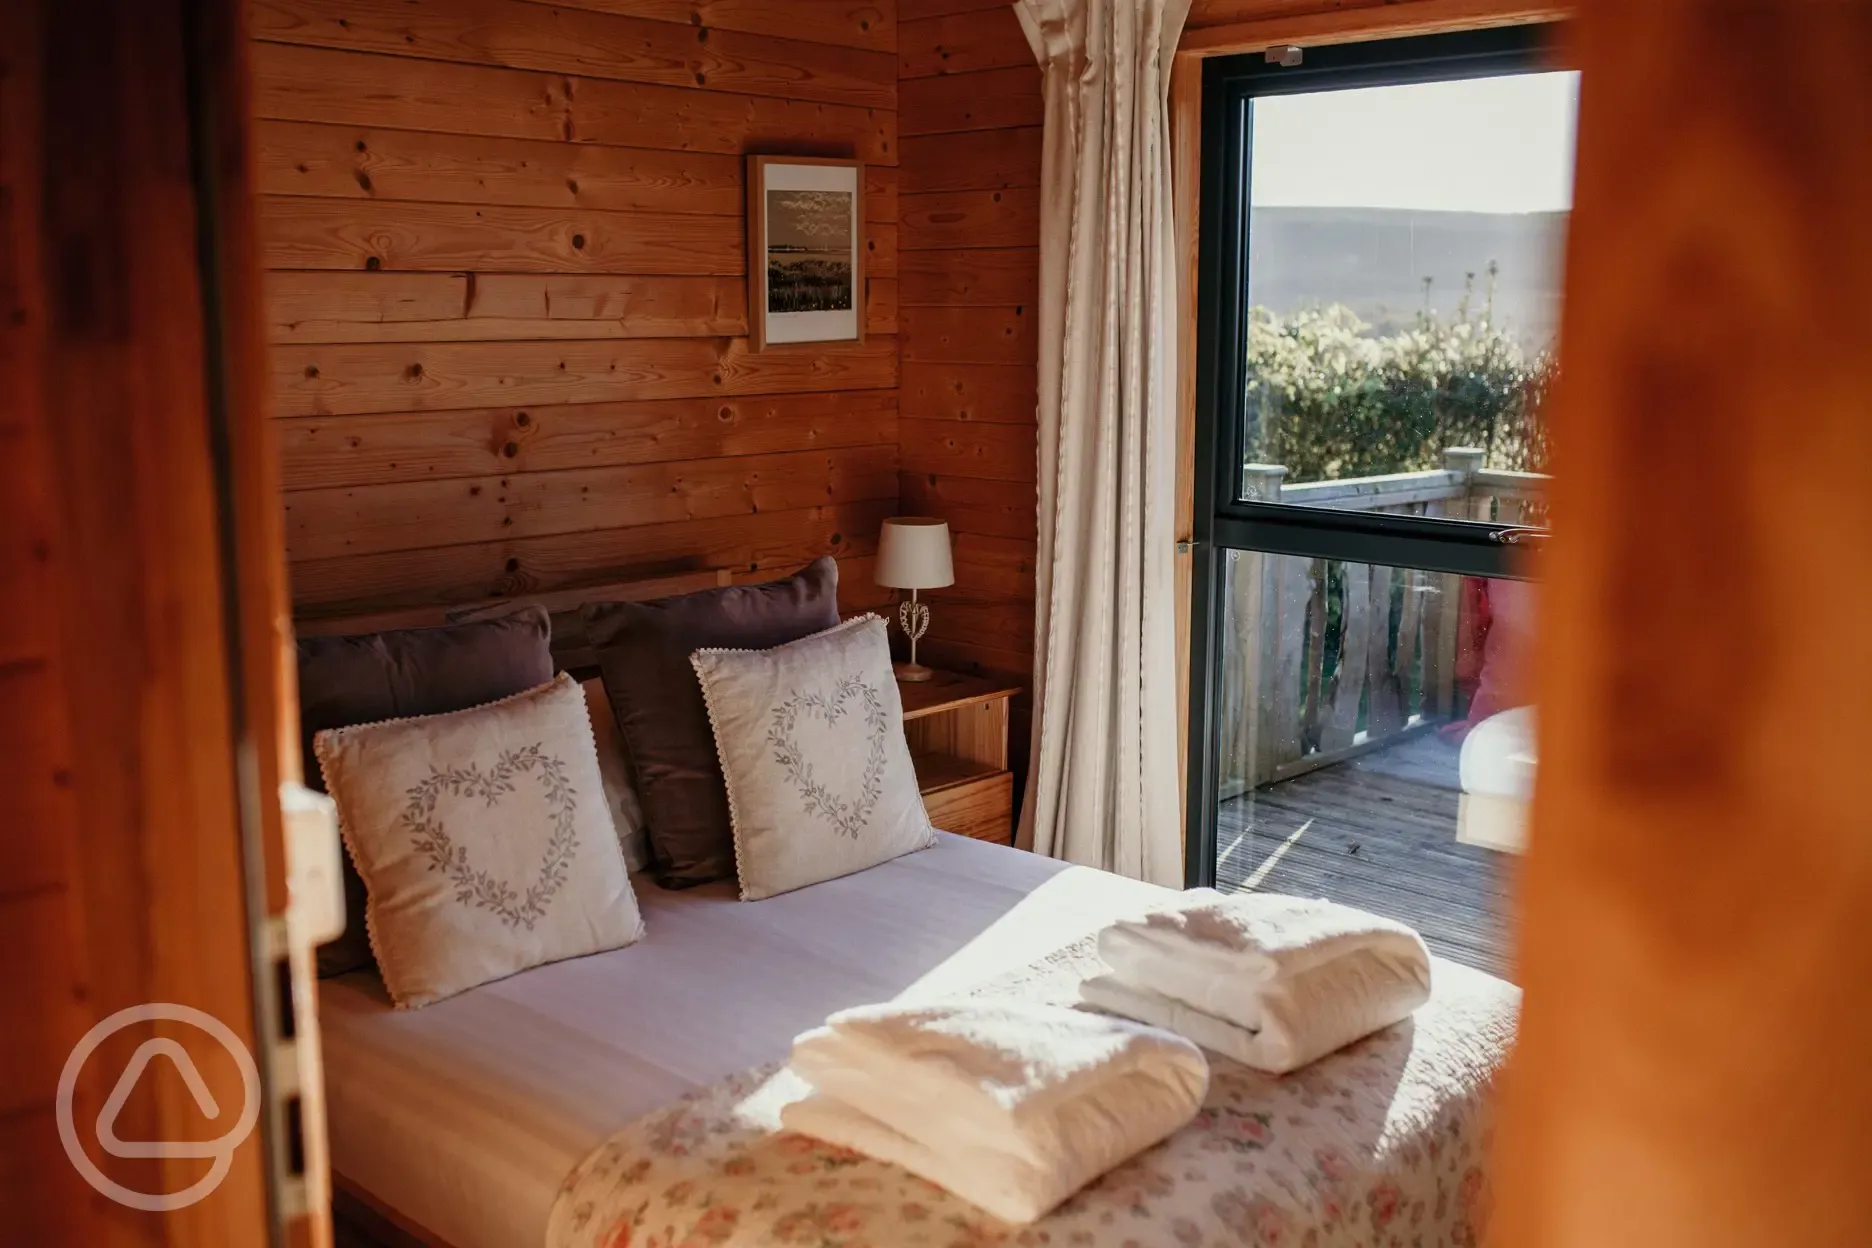 Wood cabin bedroom